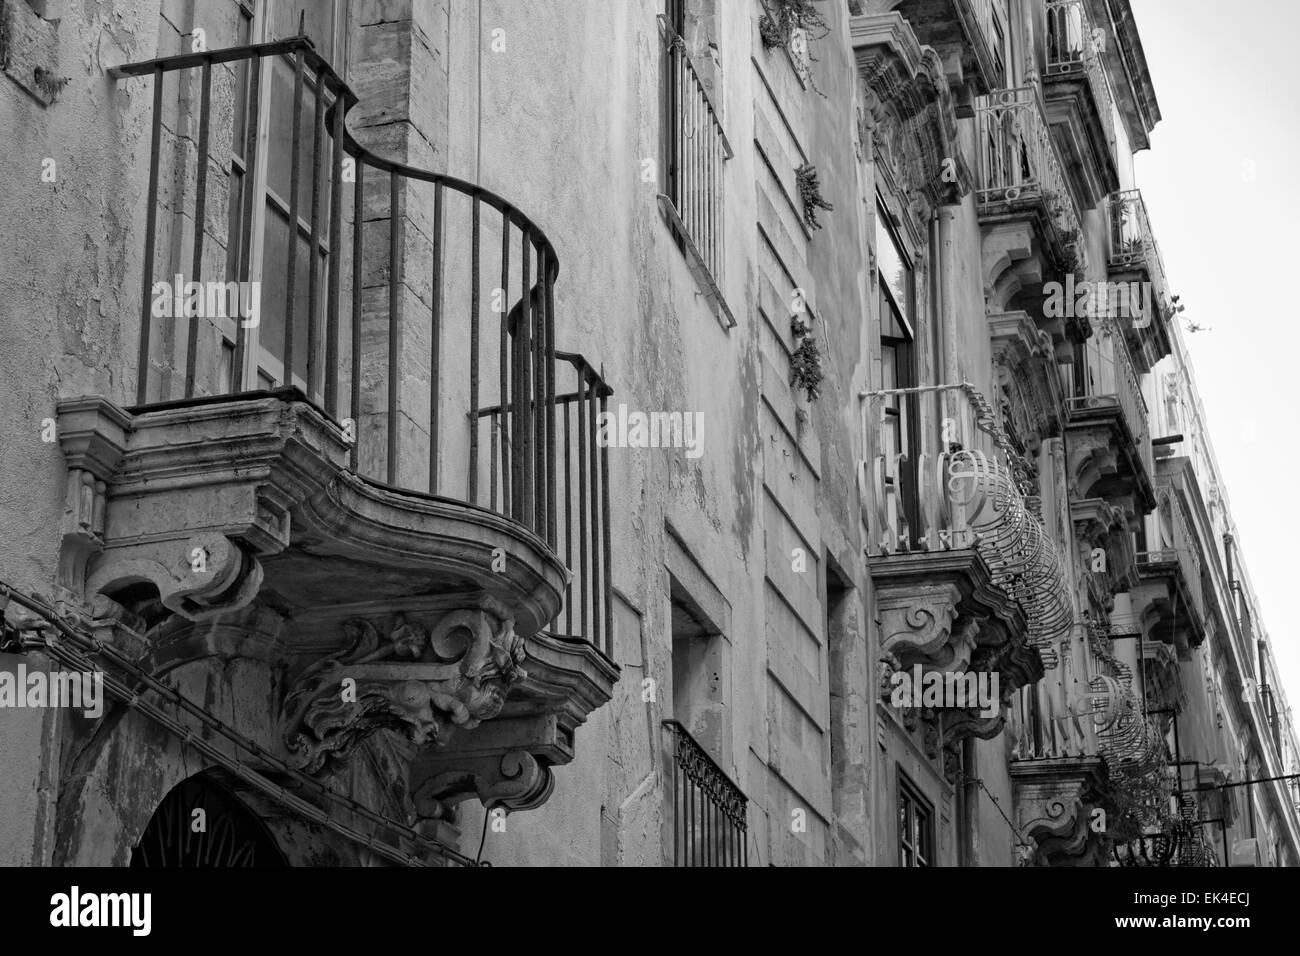 Italy, Sicily, Siracusa, Ortigia, original balcony in a baroque building facade Stock Photo